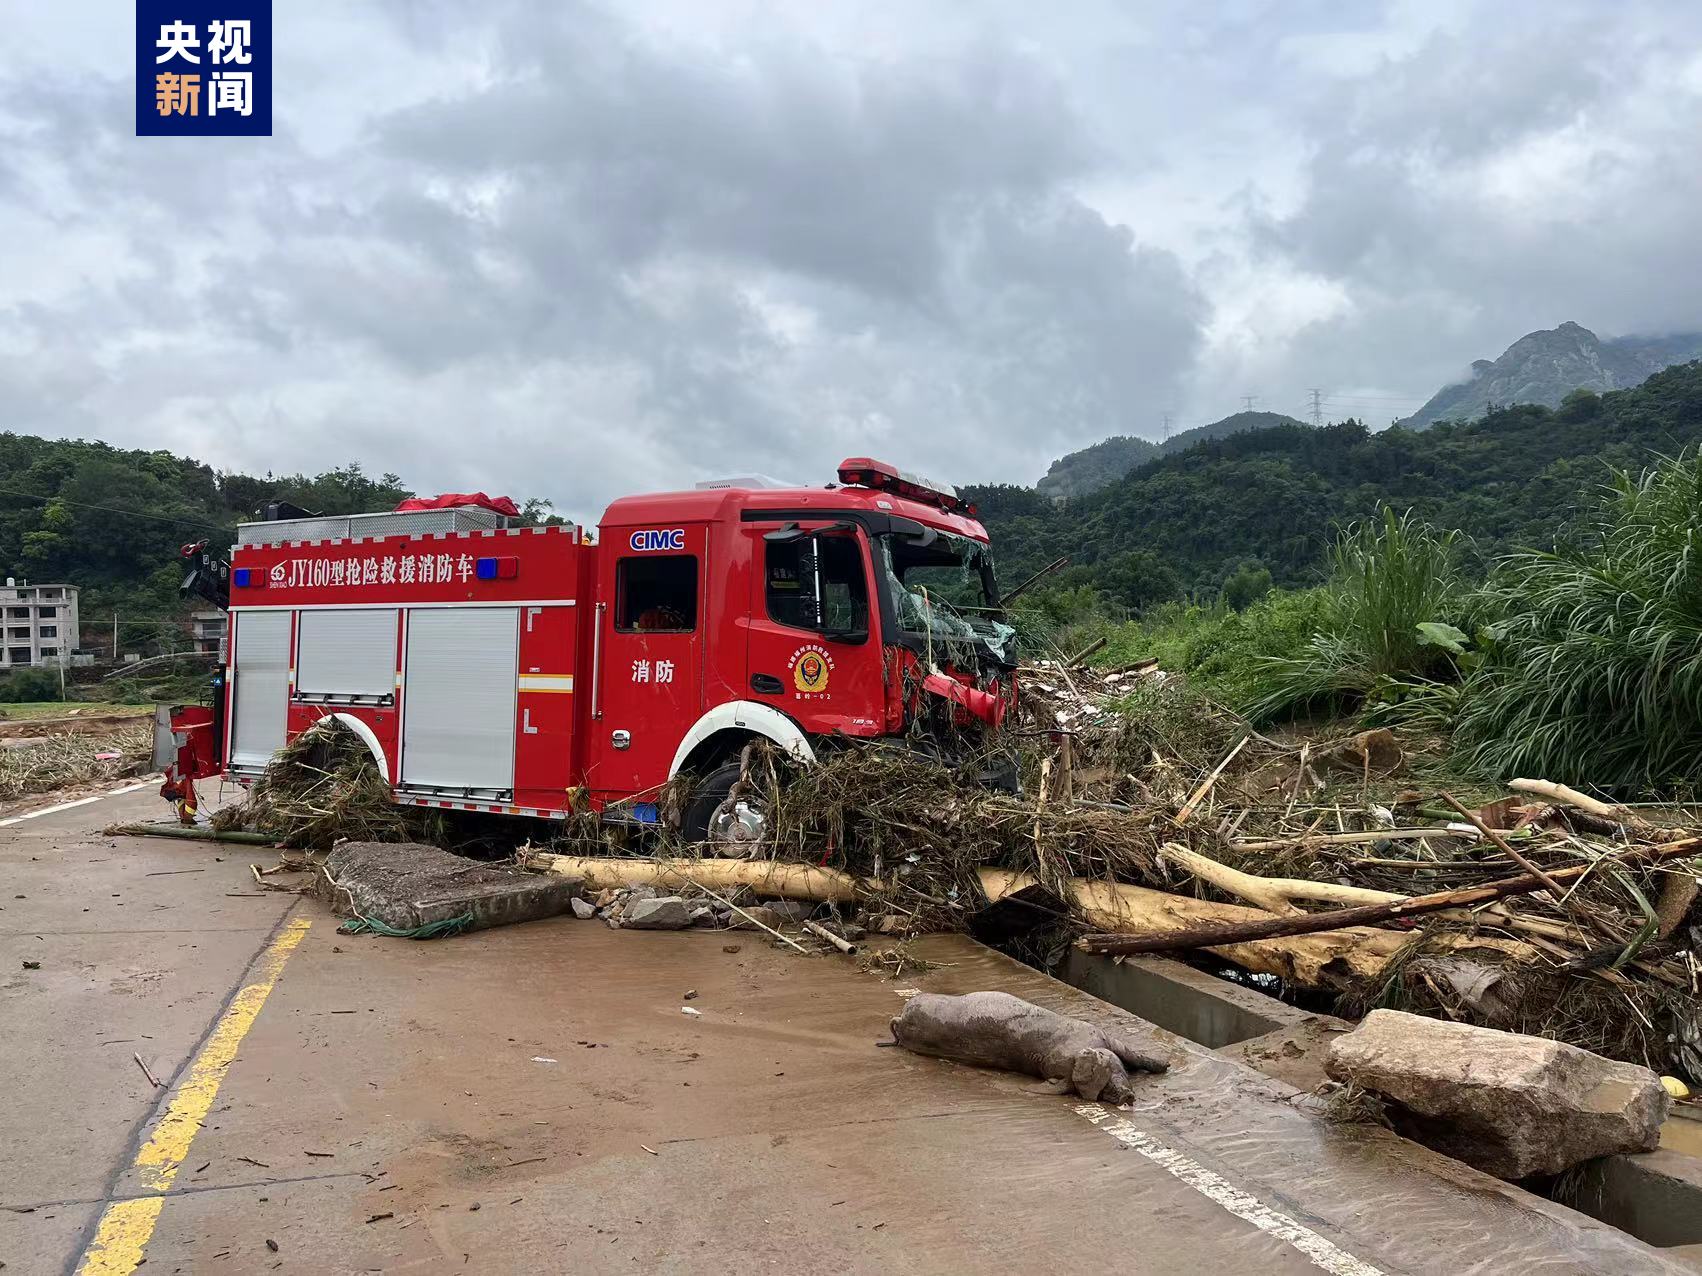 福州永泰县一消防车被洪水冲走 截至16时 6人获救1人殉职2人搜救中